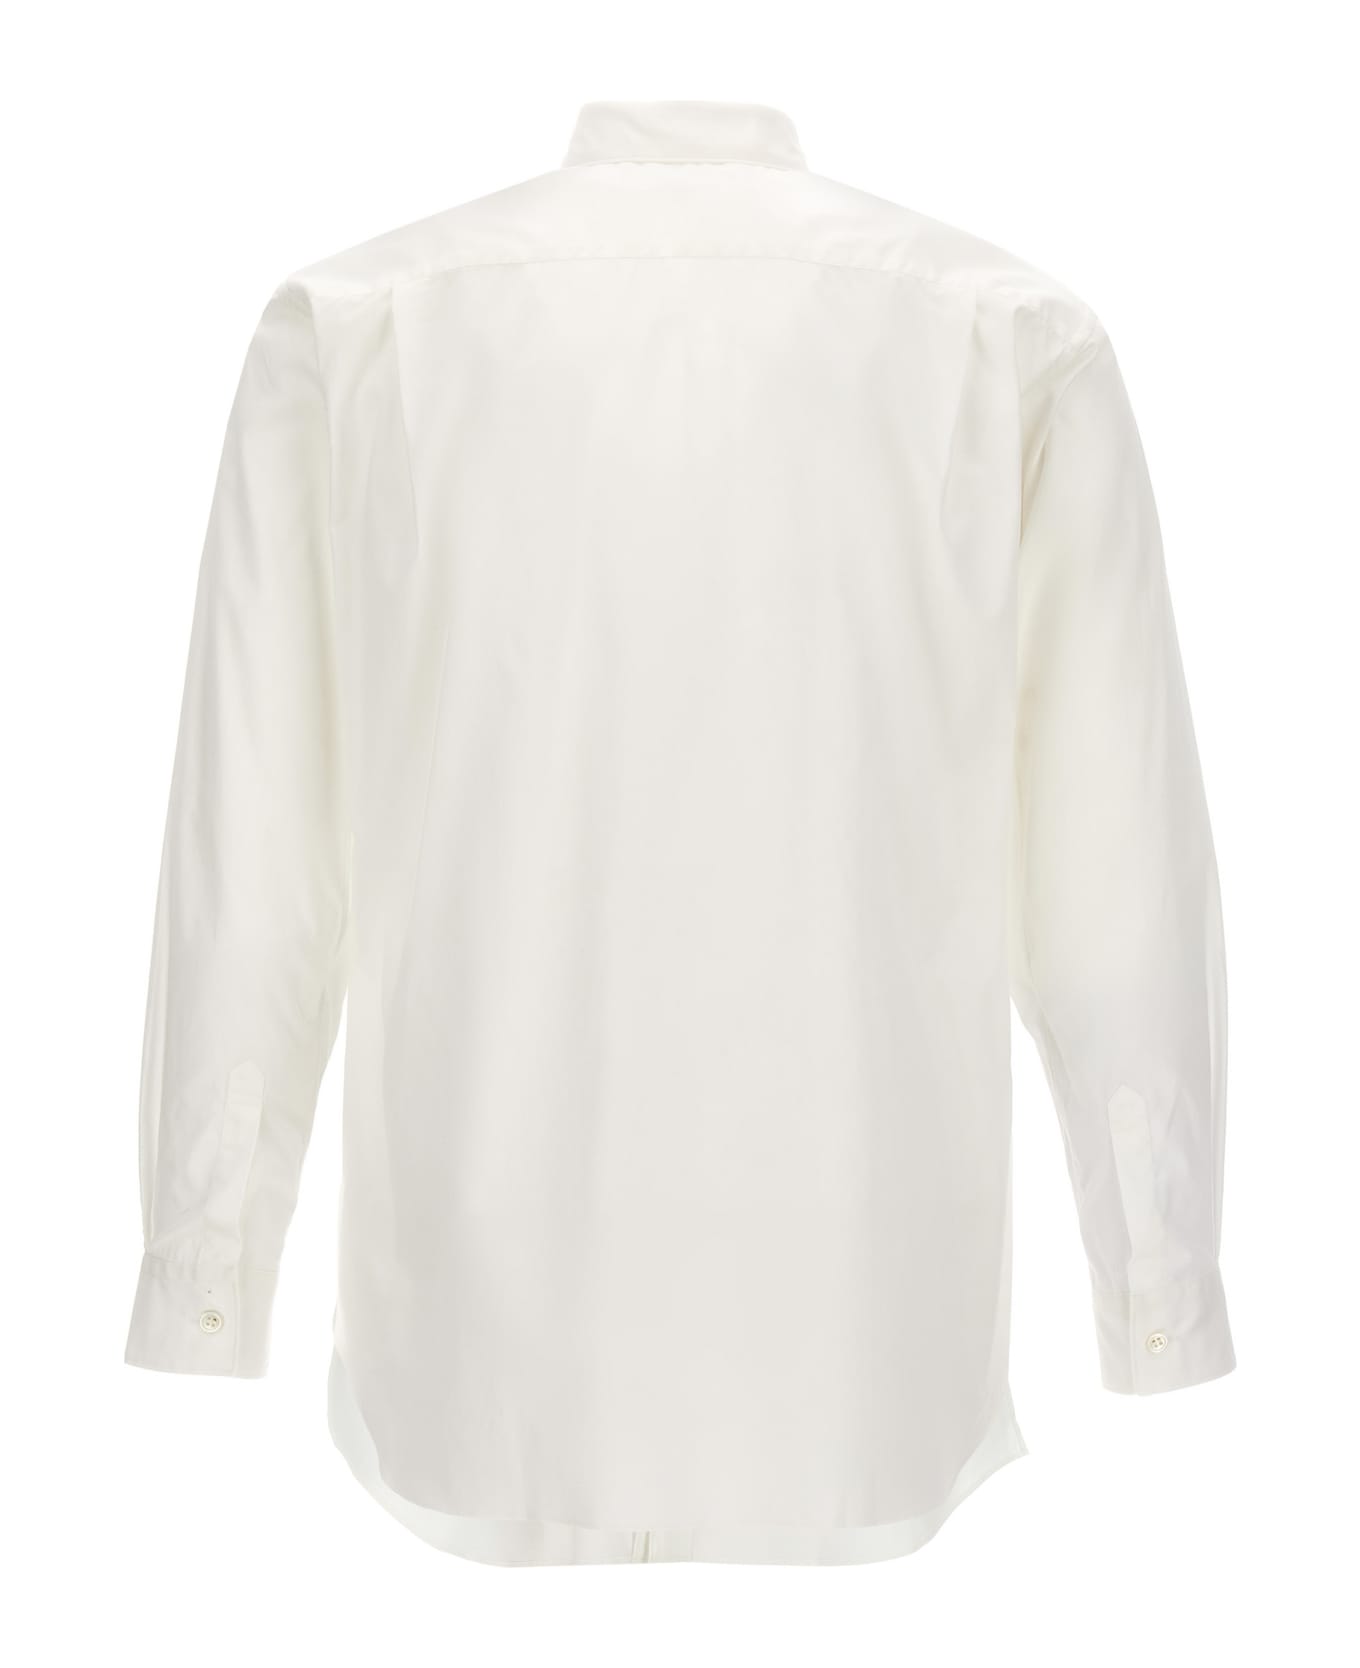 Comme des Garçons Shirt X Lacoste Shirt - White/Black